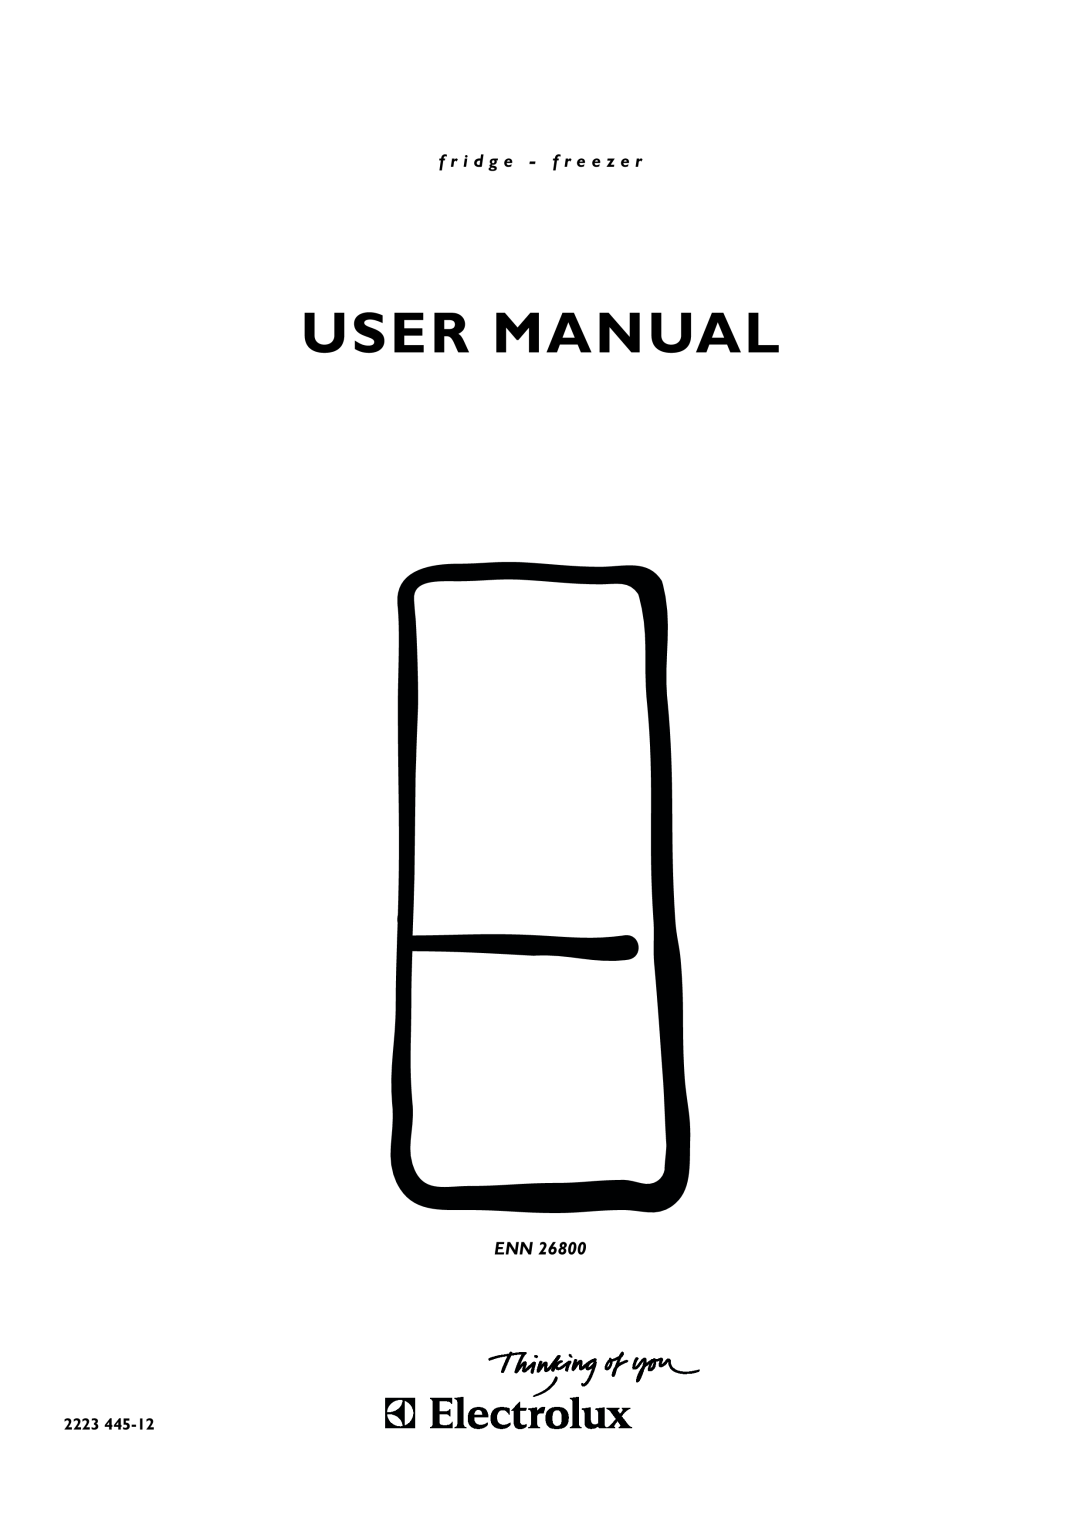 Electrolux ENN 26800 user manual User Manual, f r i d g e - f r e e z e r, 2223 